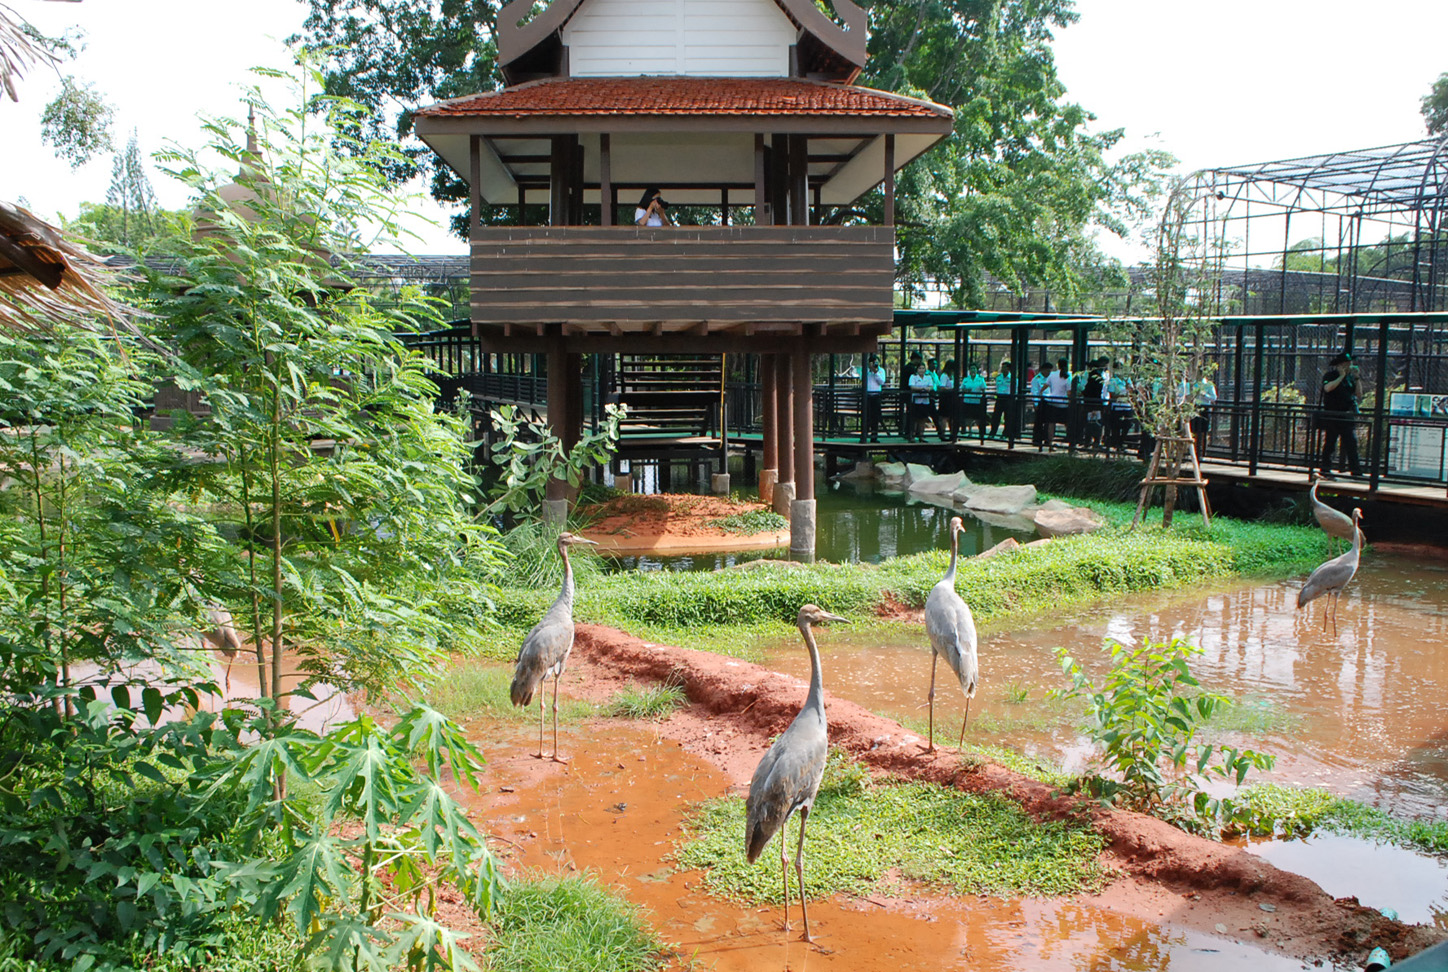 รับปิดเทอม!สวนสัตว์โคราชเปิดส่วนแสดงกระเรียนโลก แหล่งเรียนรู้นกกระเรียนแห่งเดียวของไทย(ชมคลิป)